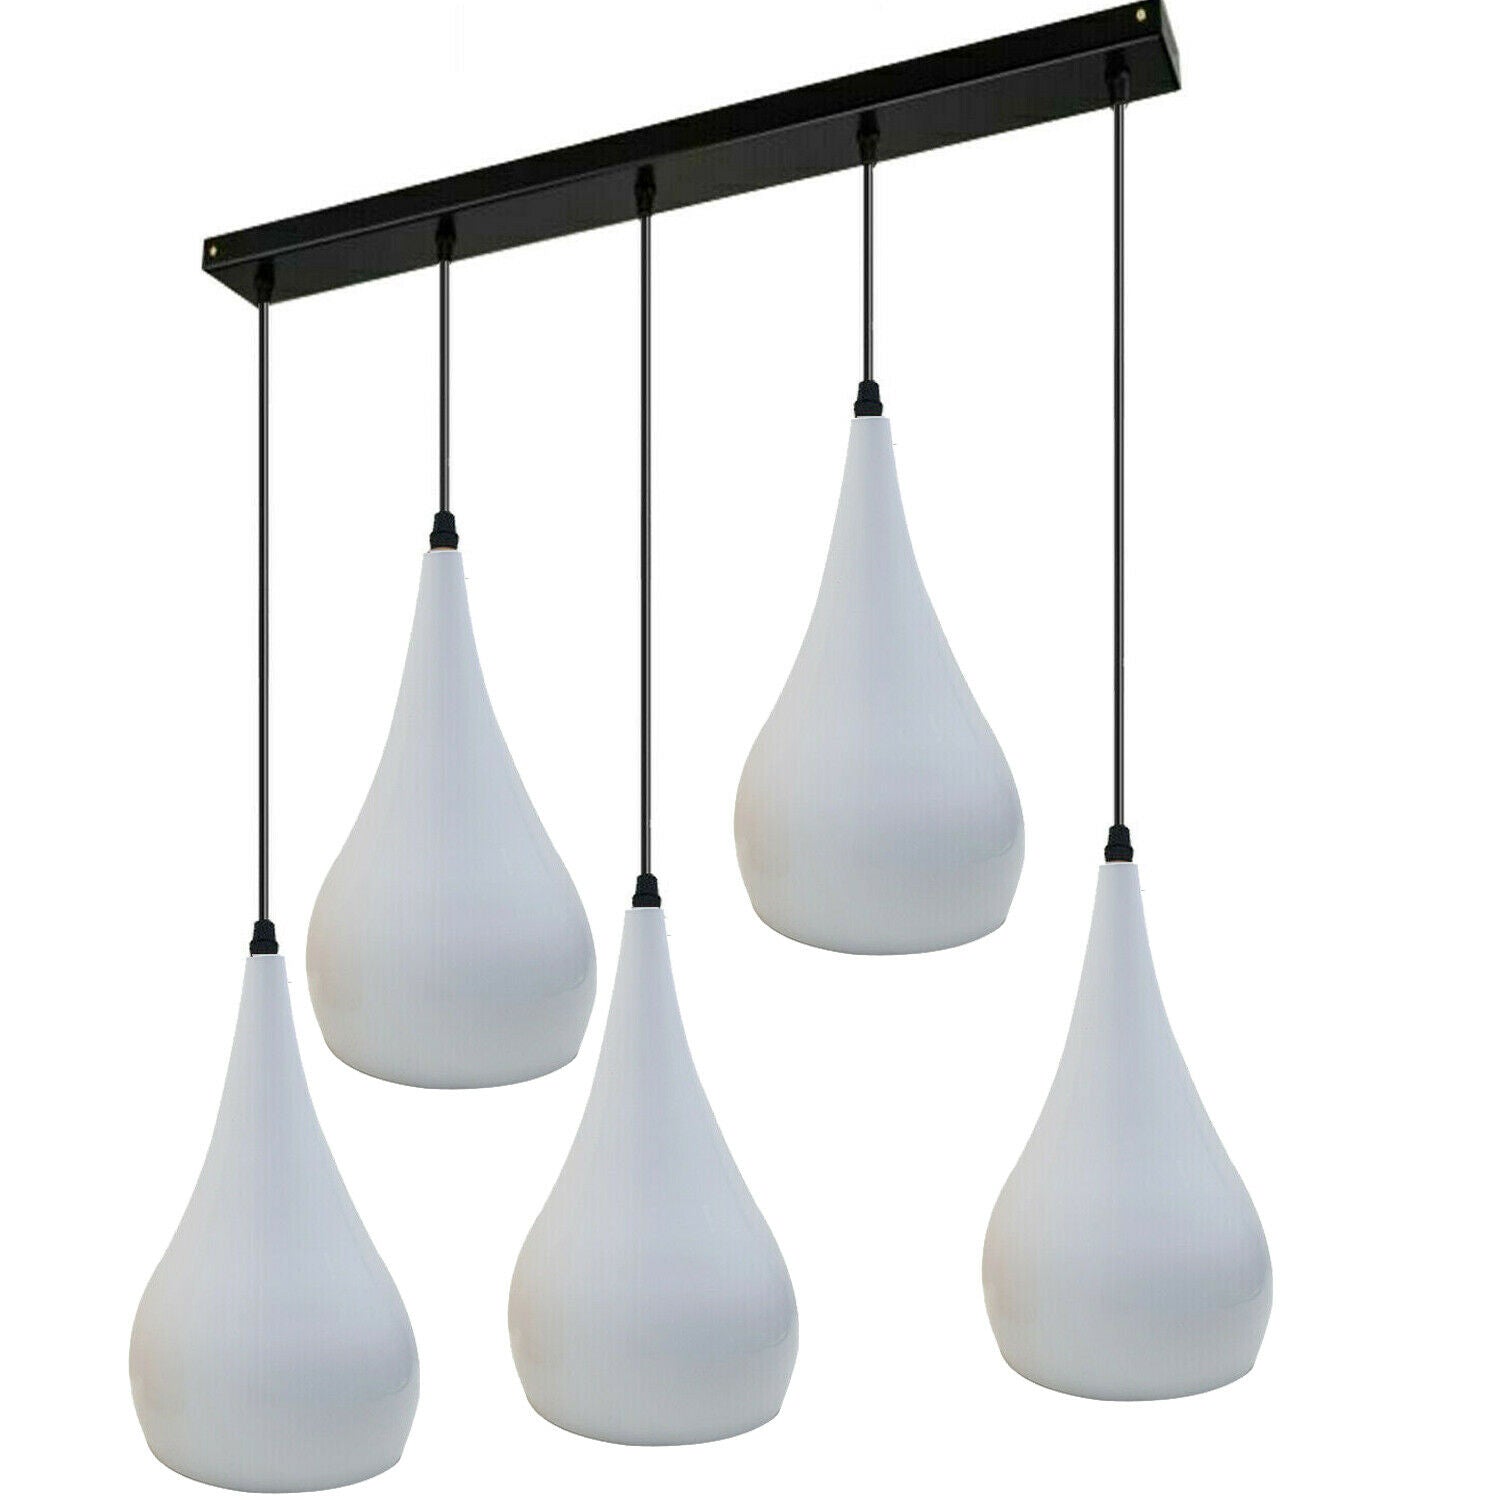 White 5 Outlet Ceiling Light Fixtures Black Hanging Pendant Lighting~1628 - LEDSone UK Ltd